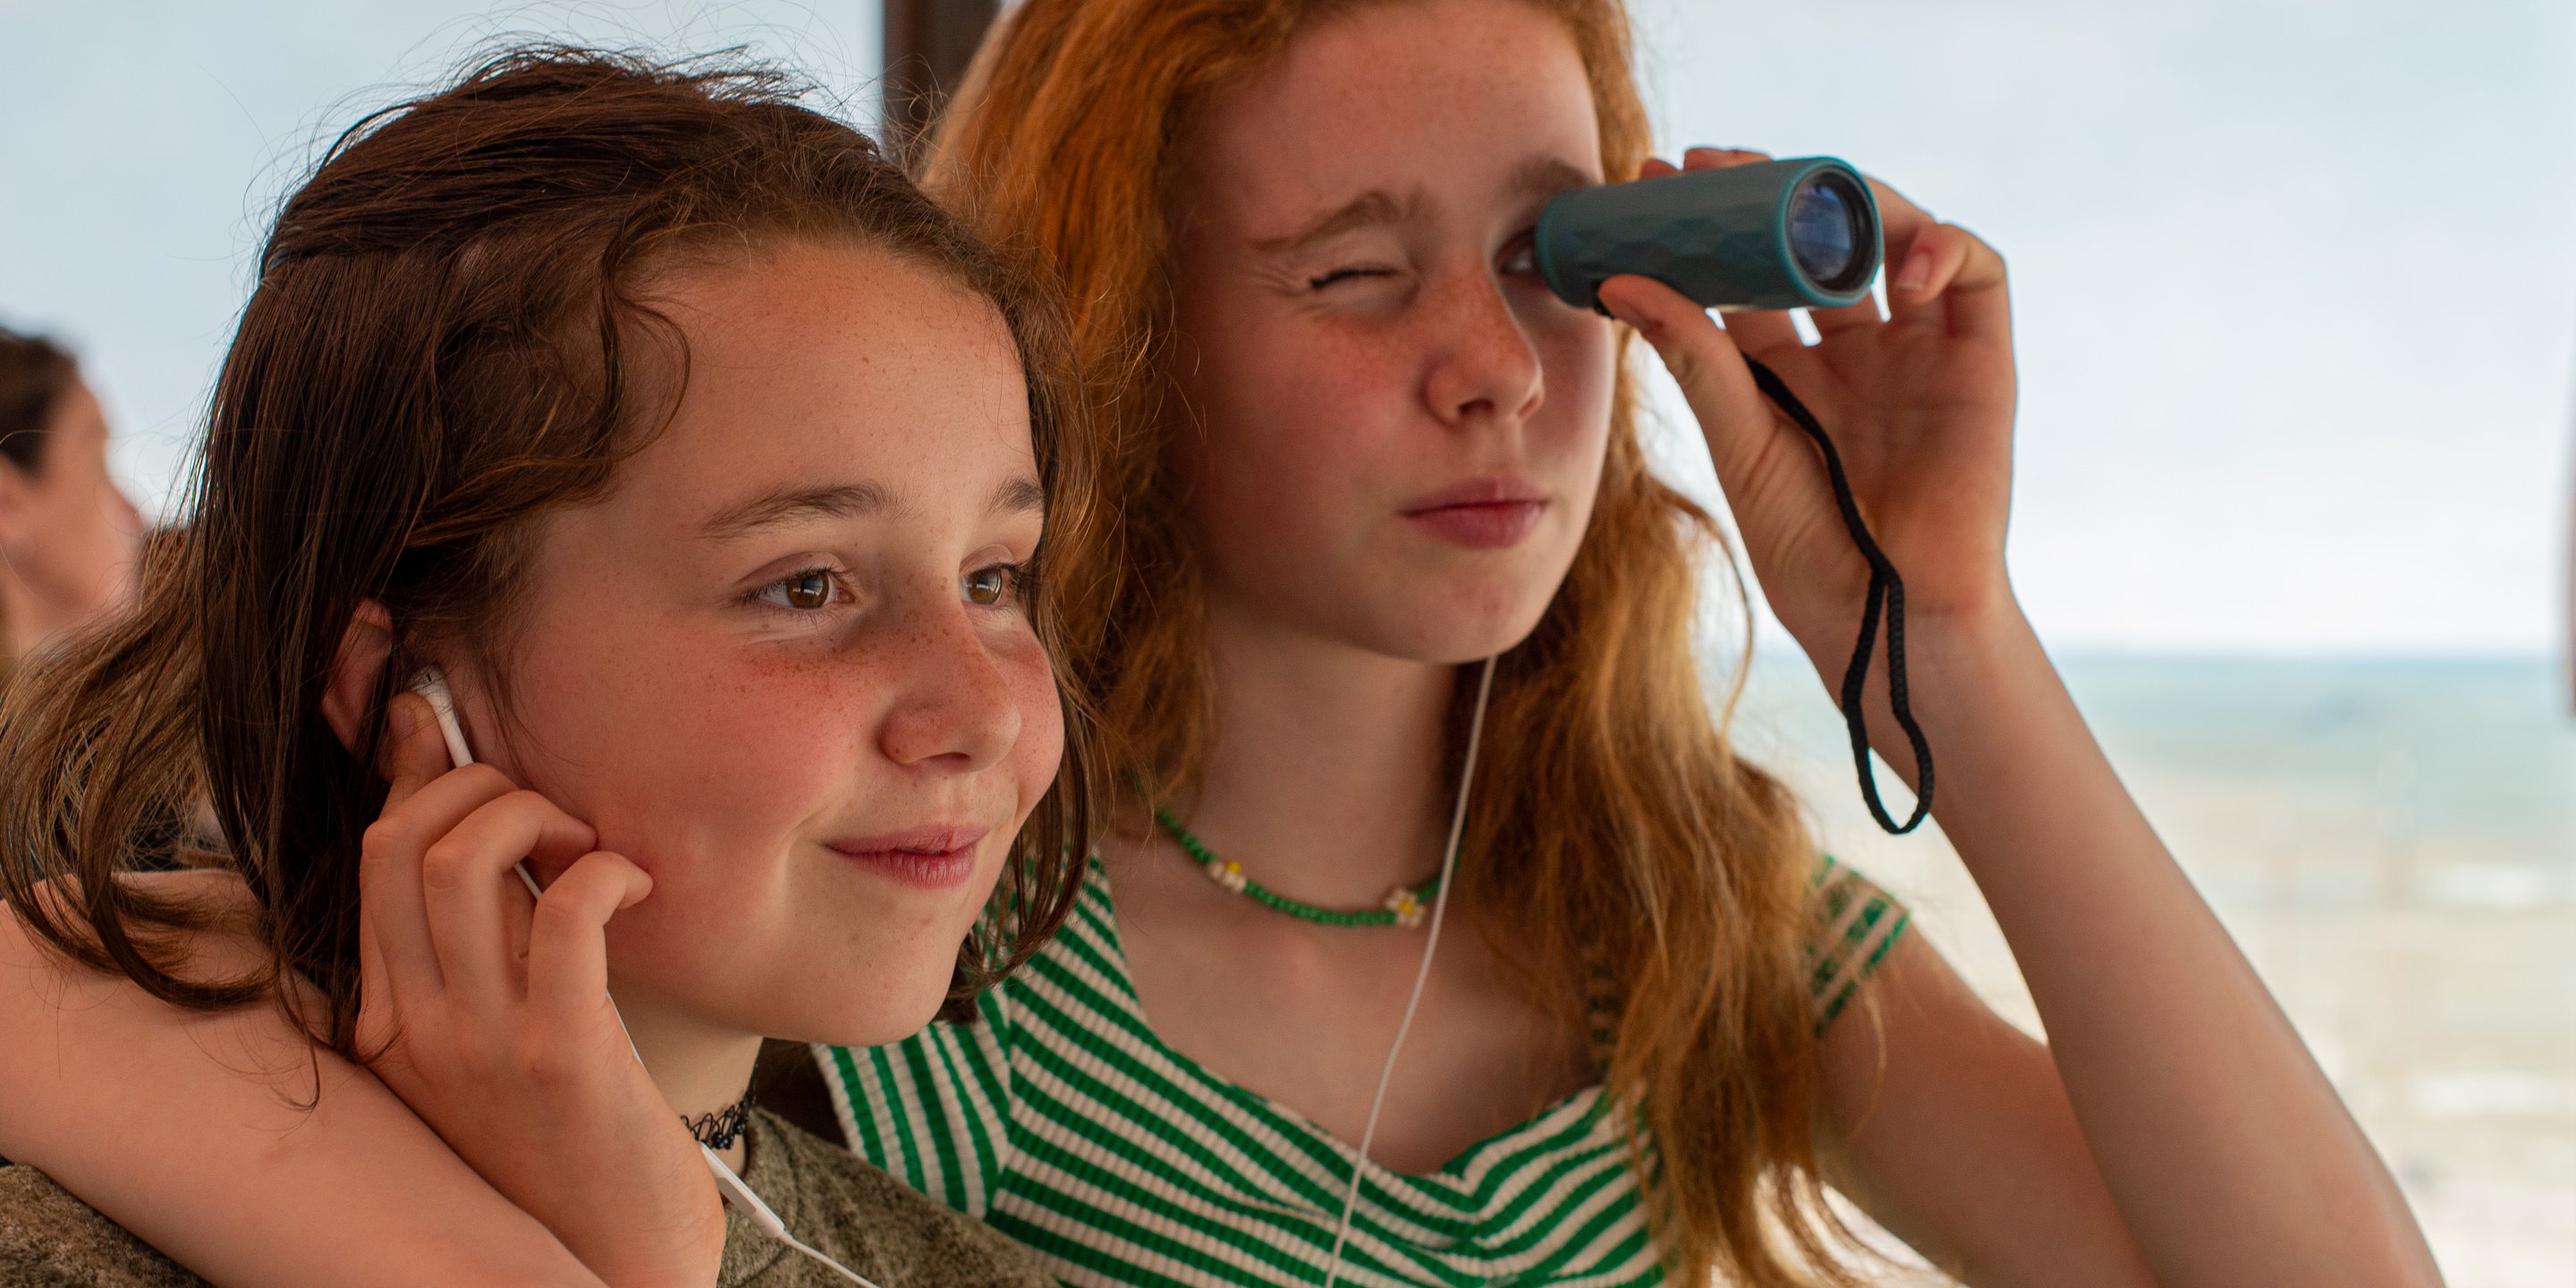 Zusjes kijken met een verrekijker het panorama terwijl ze samen via oortjes naar een audiotour luisteren.